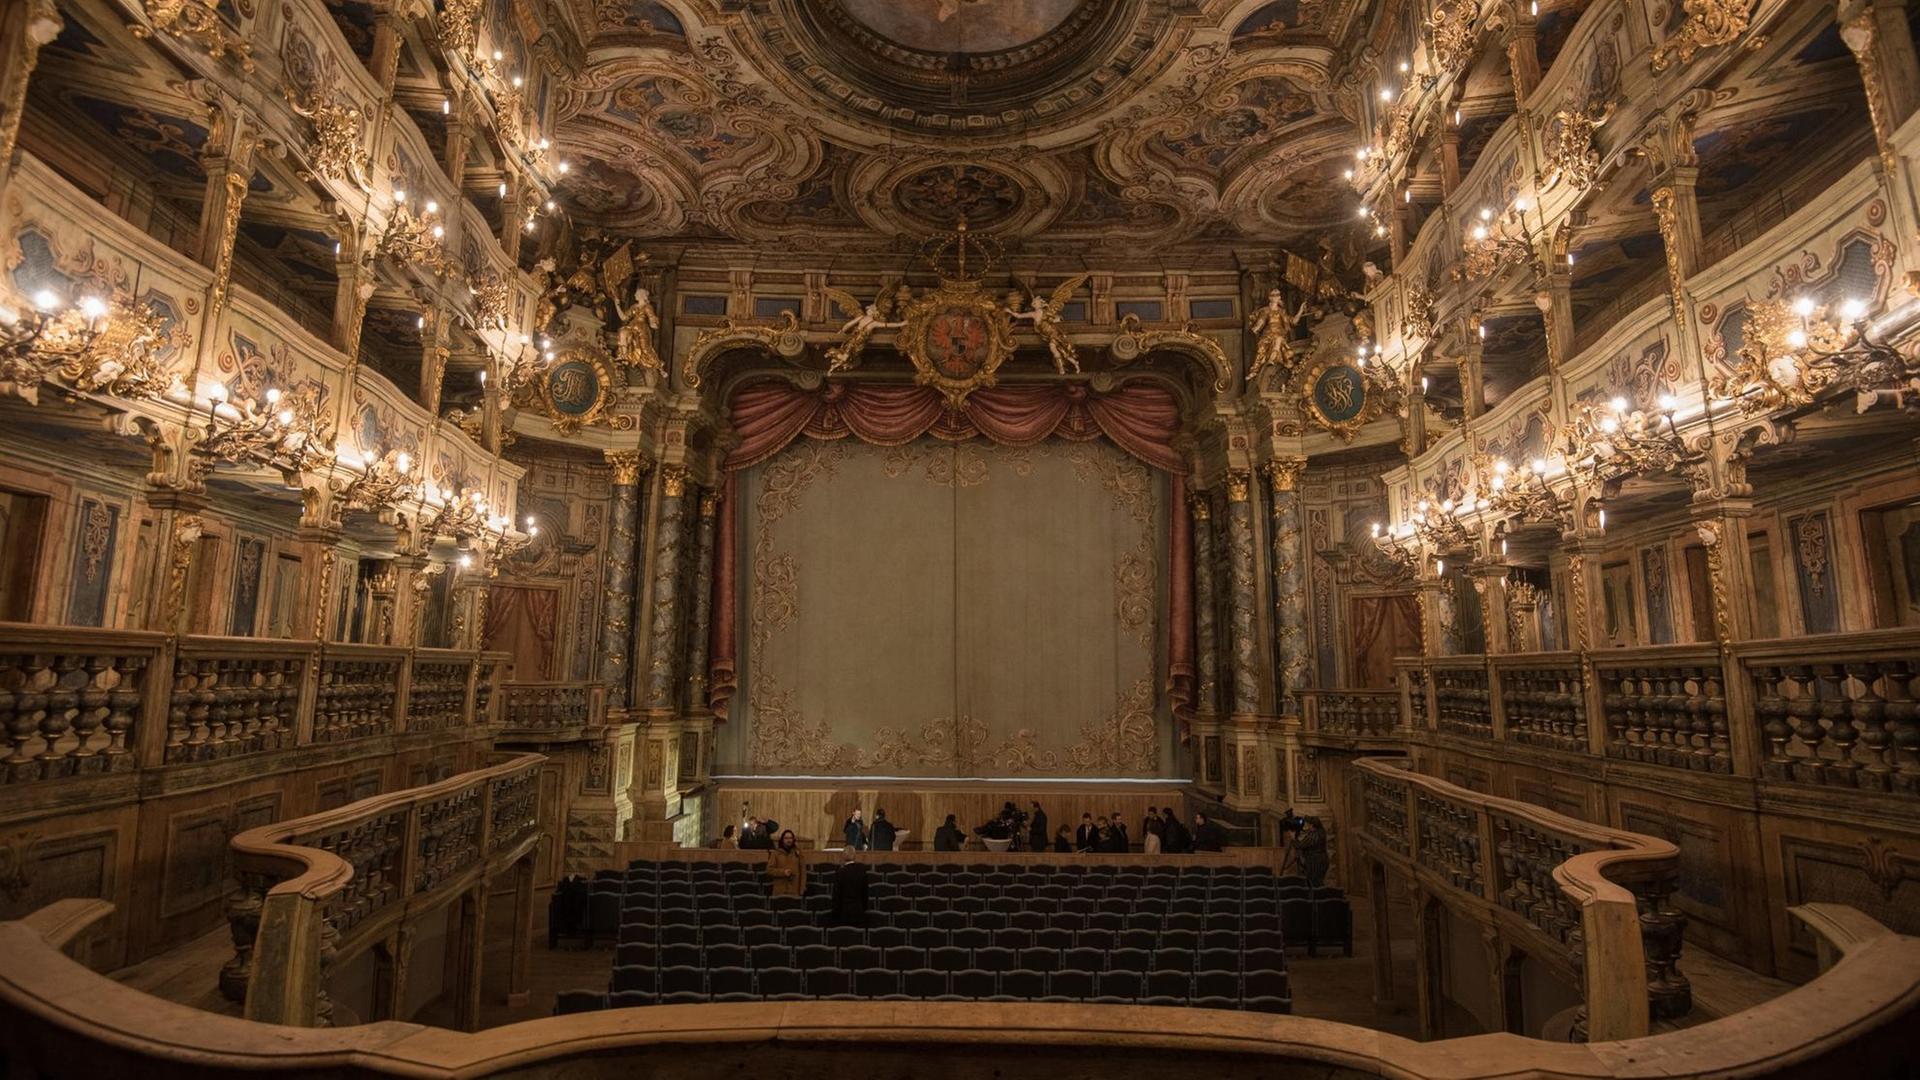 Das Markgräfliche Opernhaus in Bayreuth (Bayern), aufgenommen am 21.12.2017.